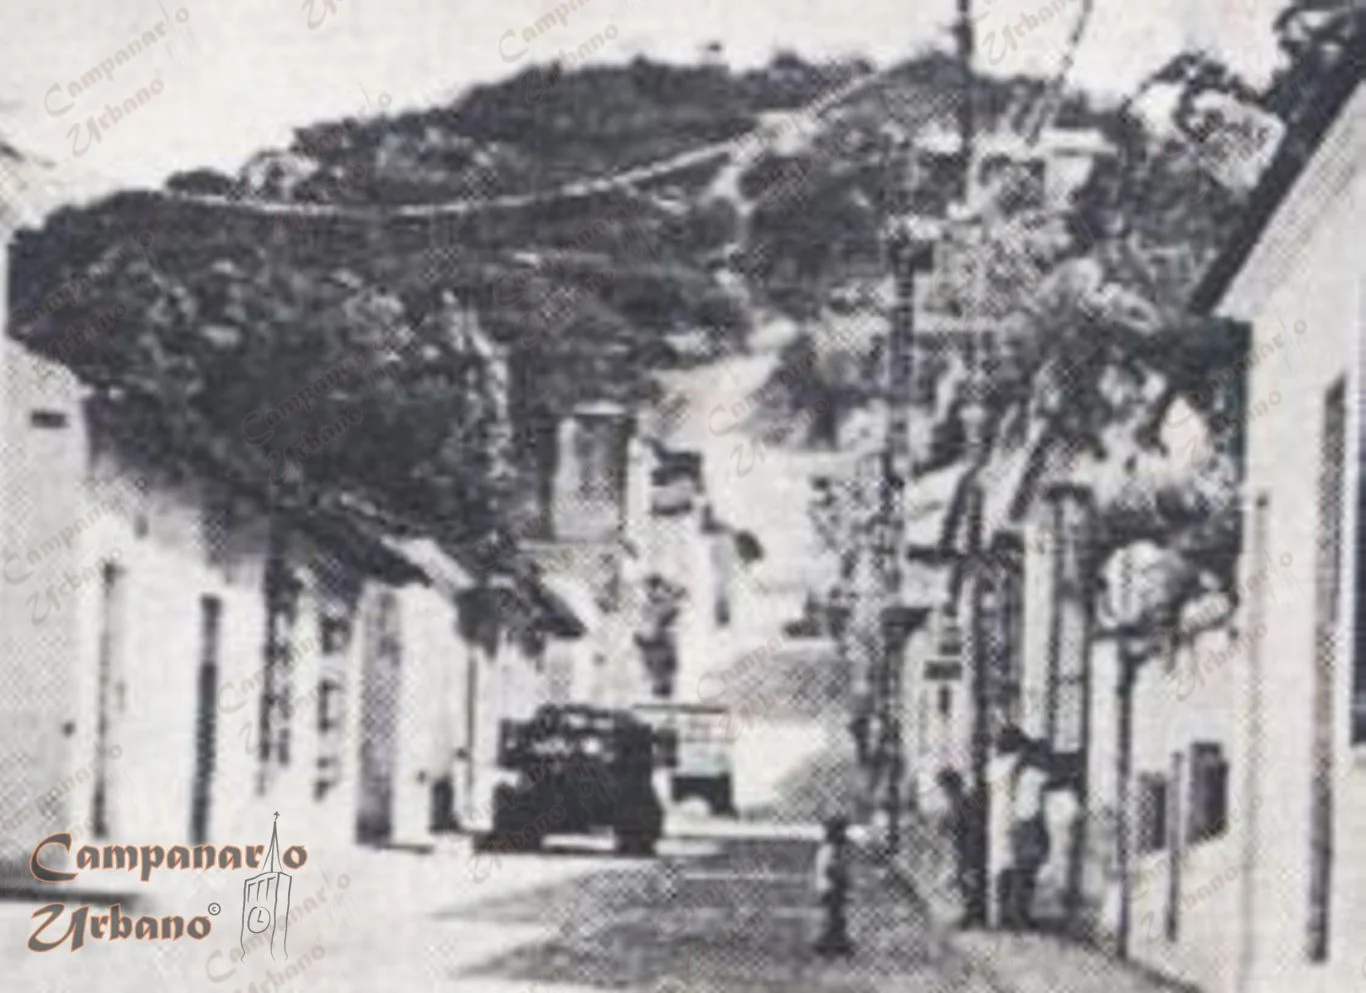 Cerro de los Chivos, final calle Bolívar, Guarenas, década de 1960.